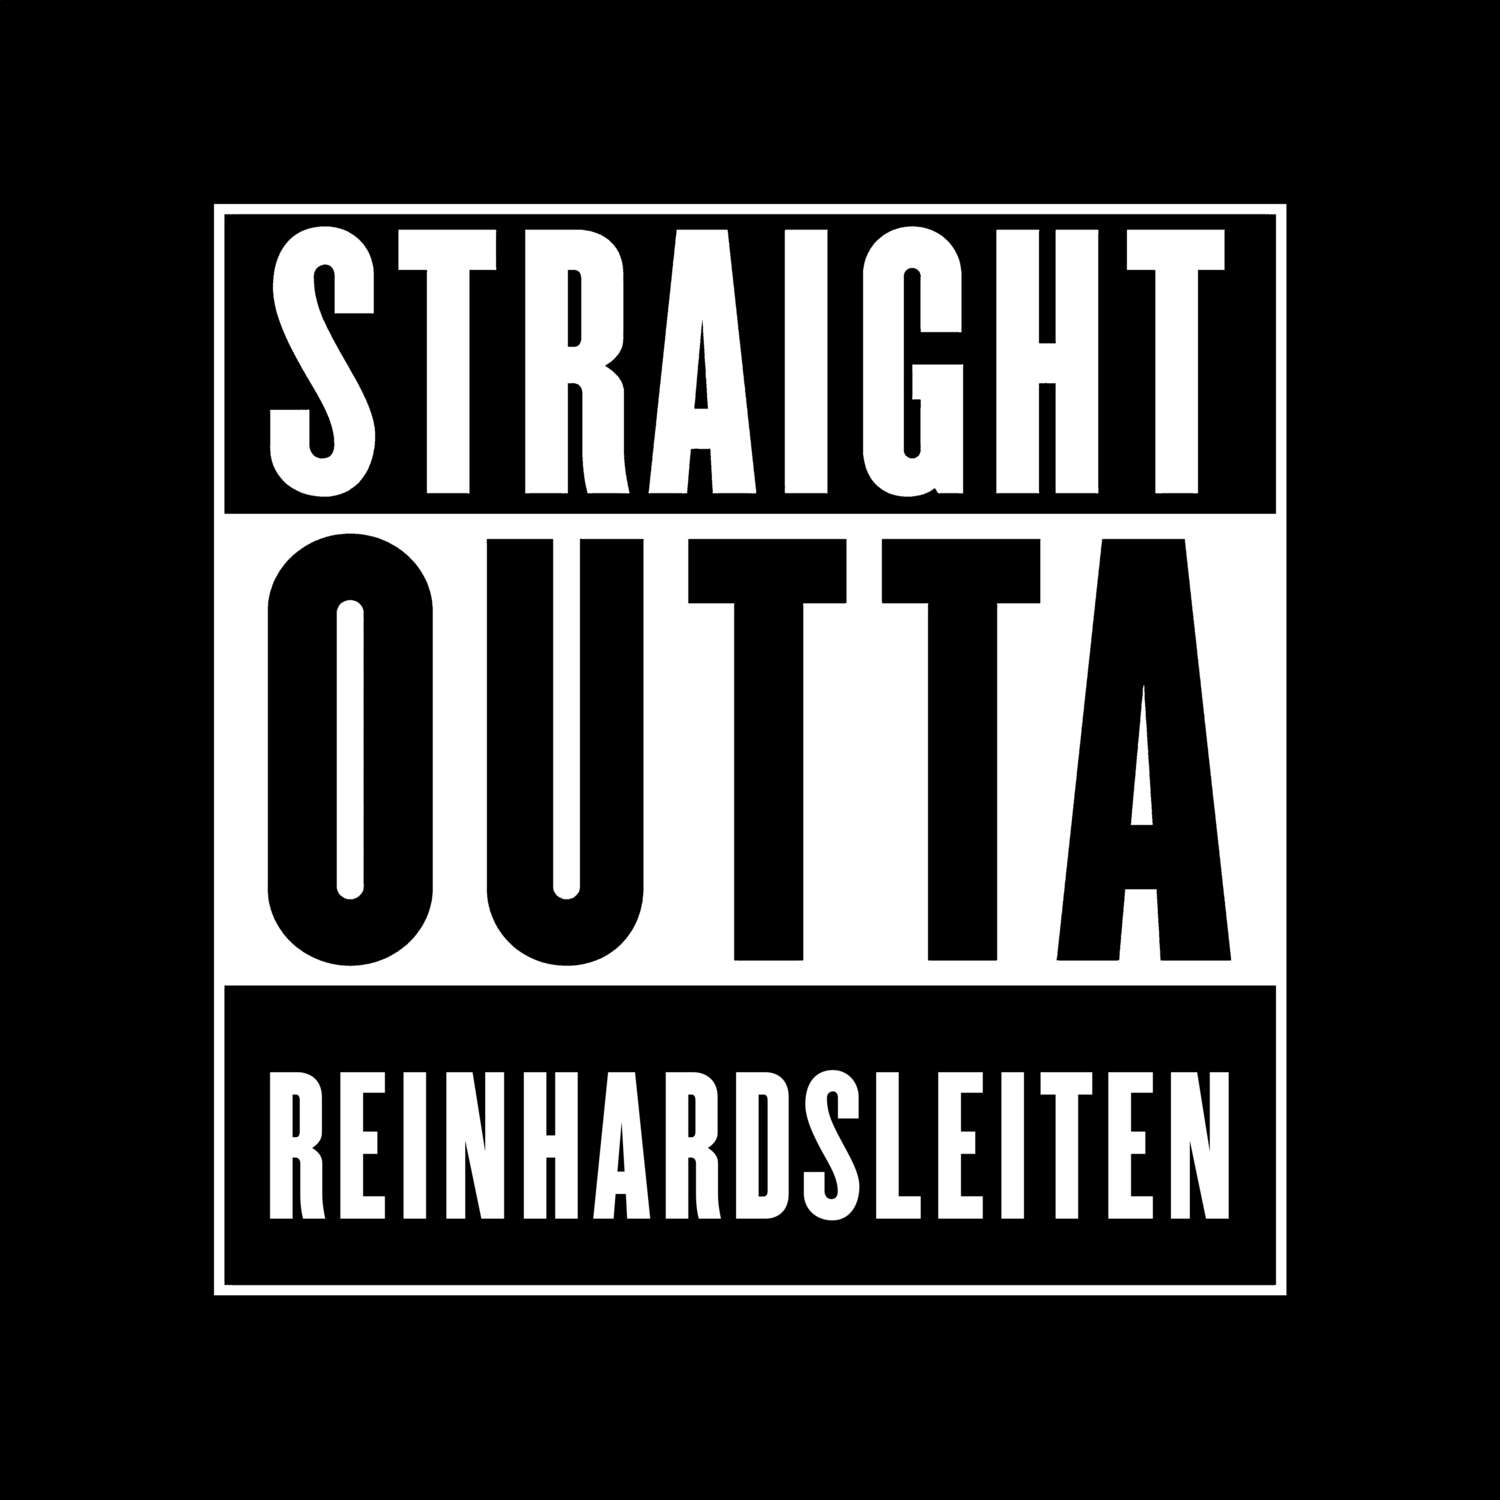 Reinhardsleiten T-Shirt »Straight Outta«